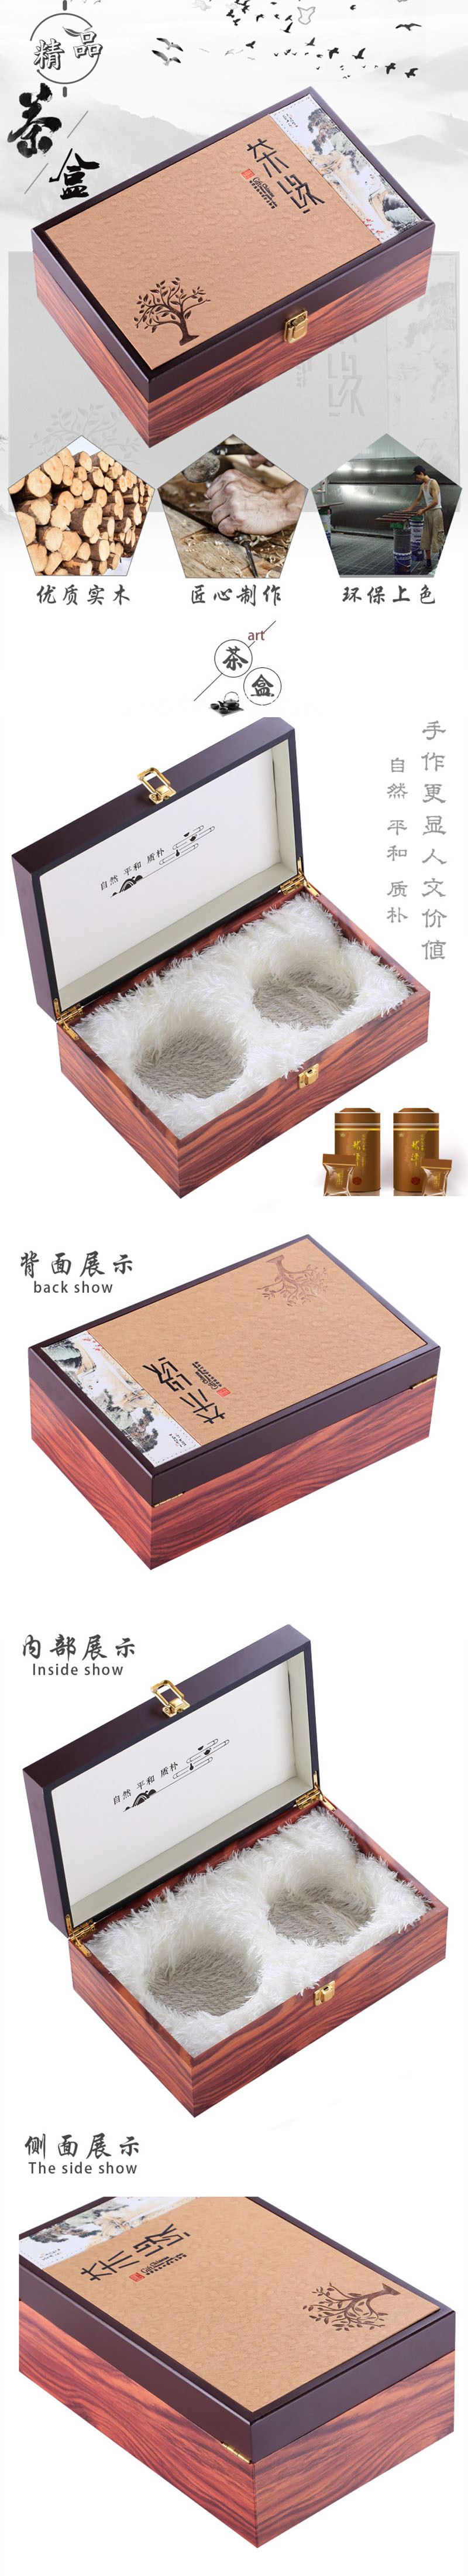 茶叶礼盒木盒设计制作